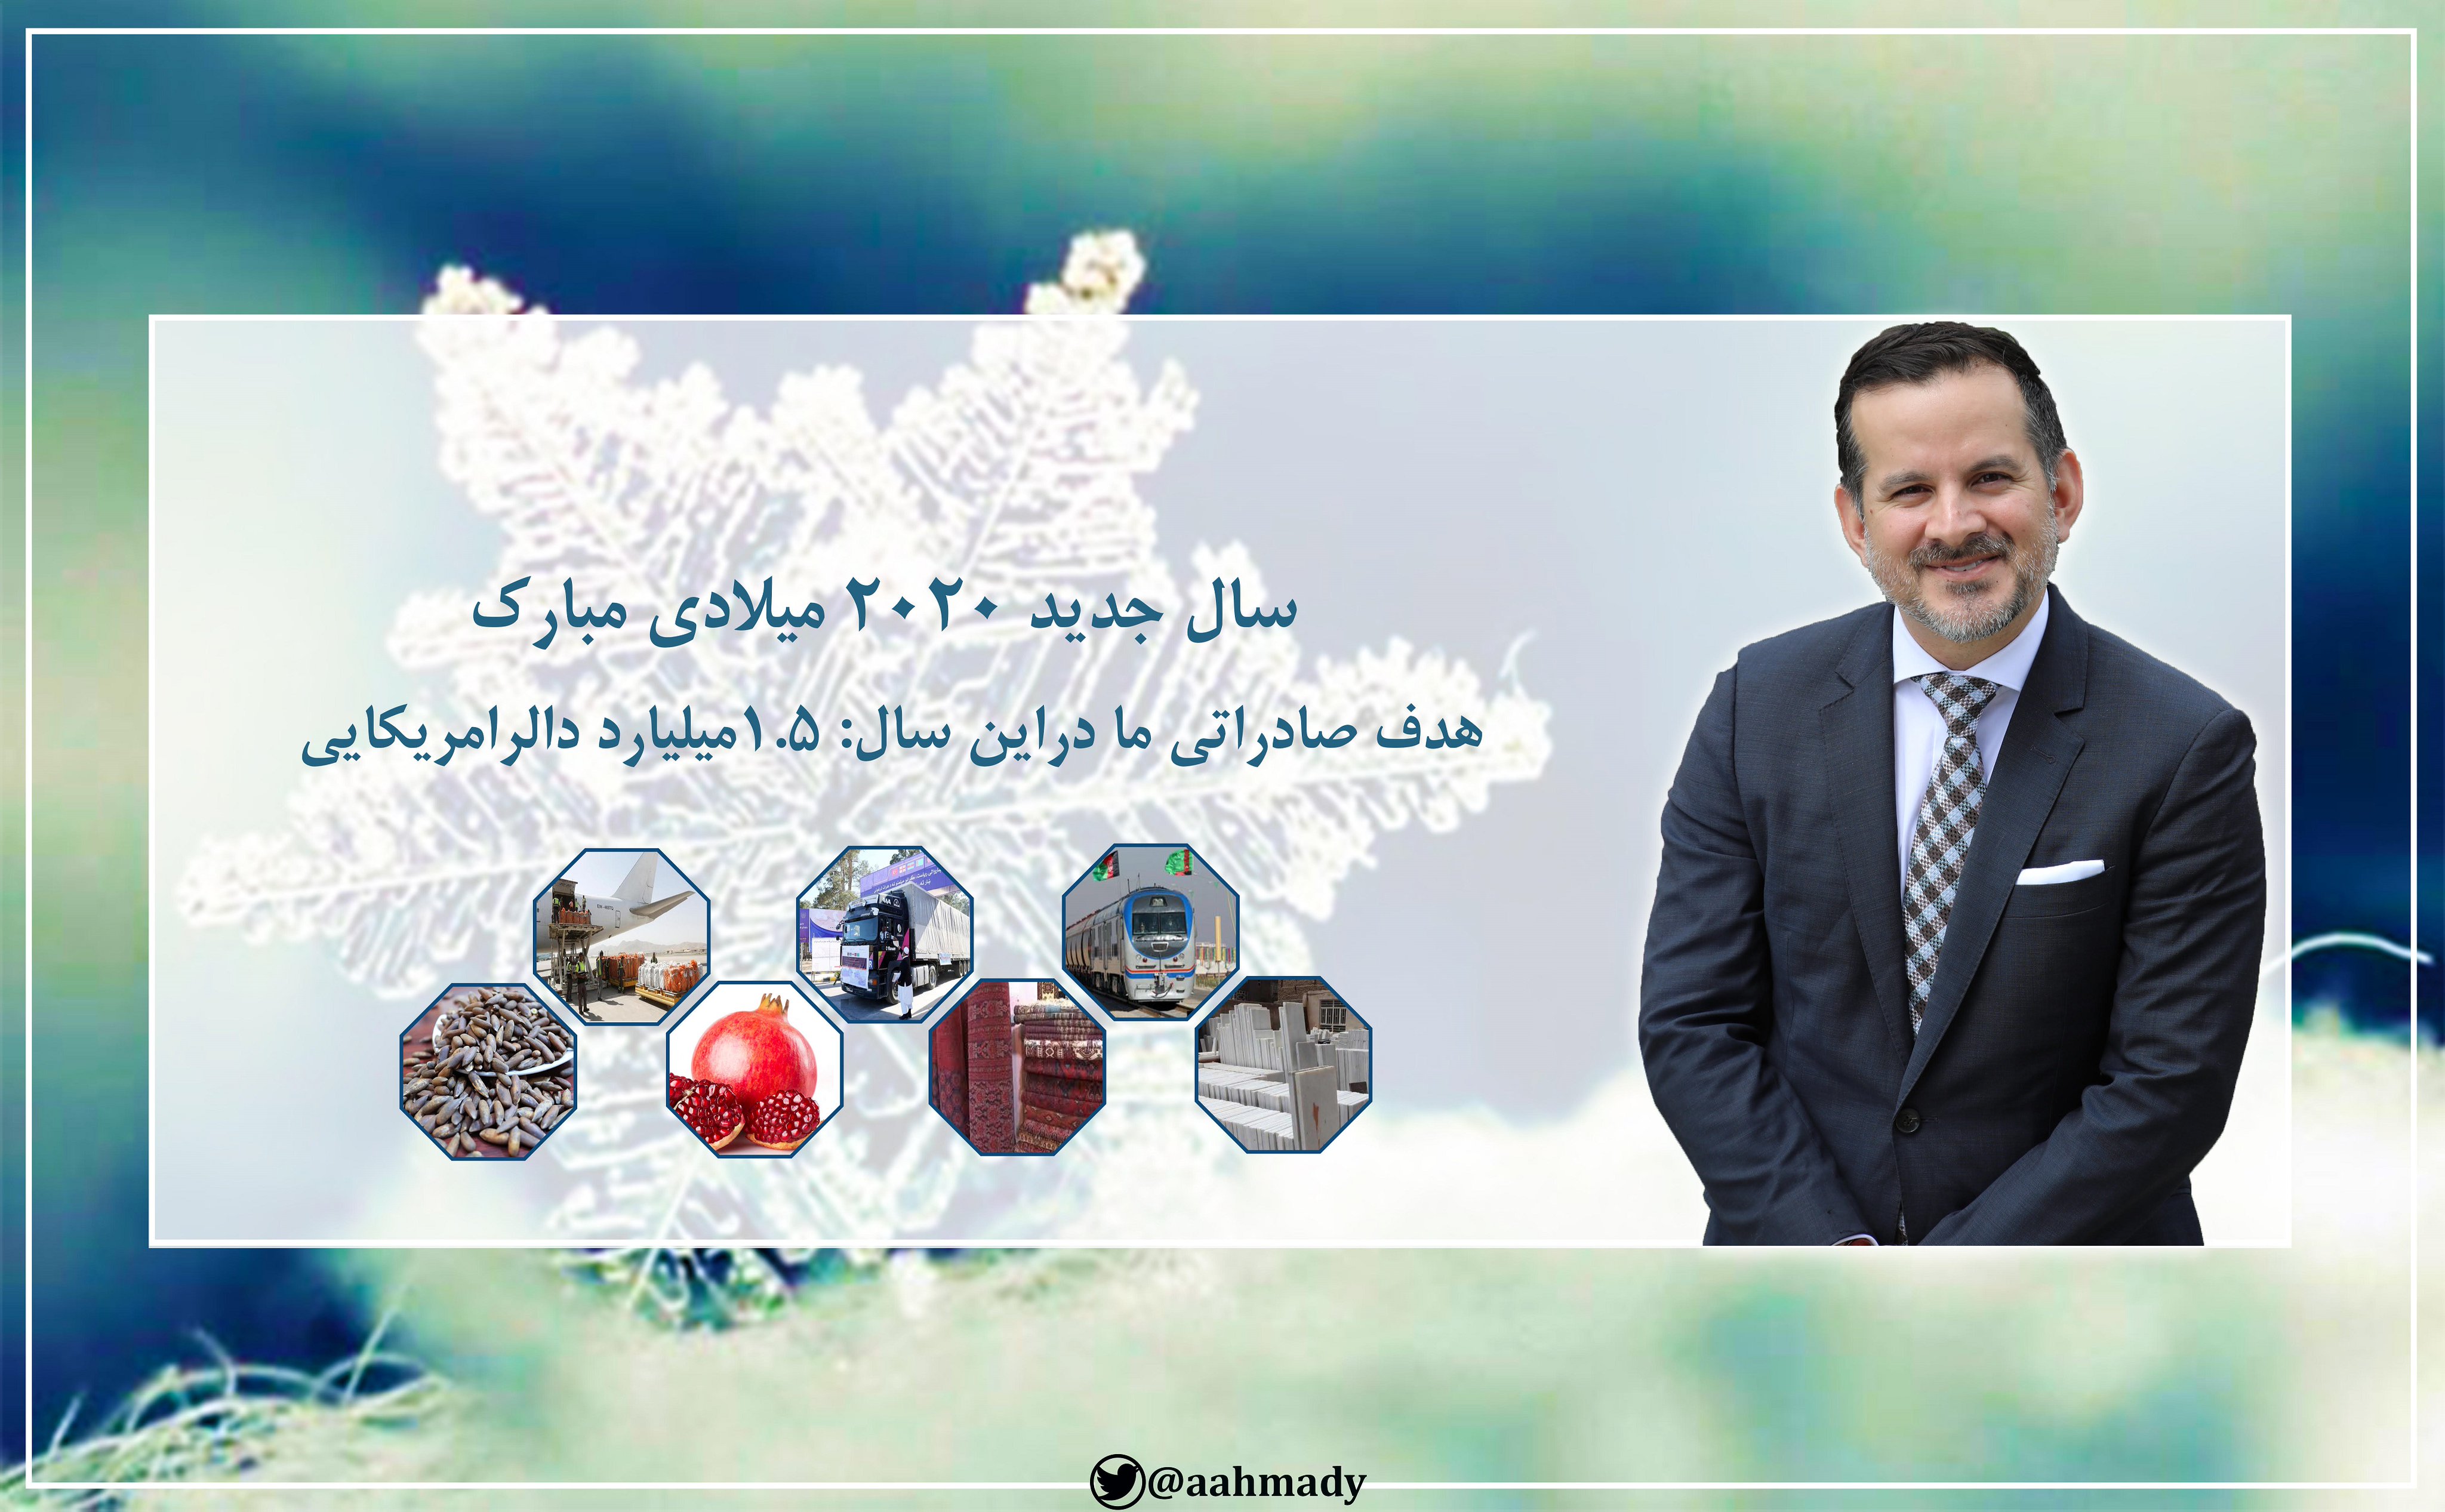 پیام تبریکی محترم اجمل احمدی سرپرست وزارت صنعت وتجارت به مناسبت سال جدید میلادی